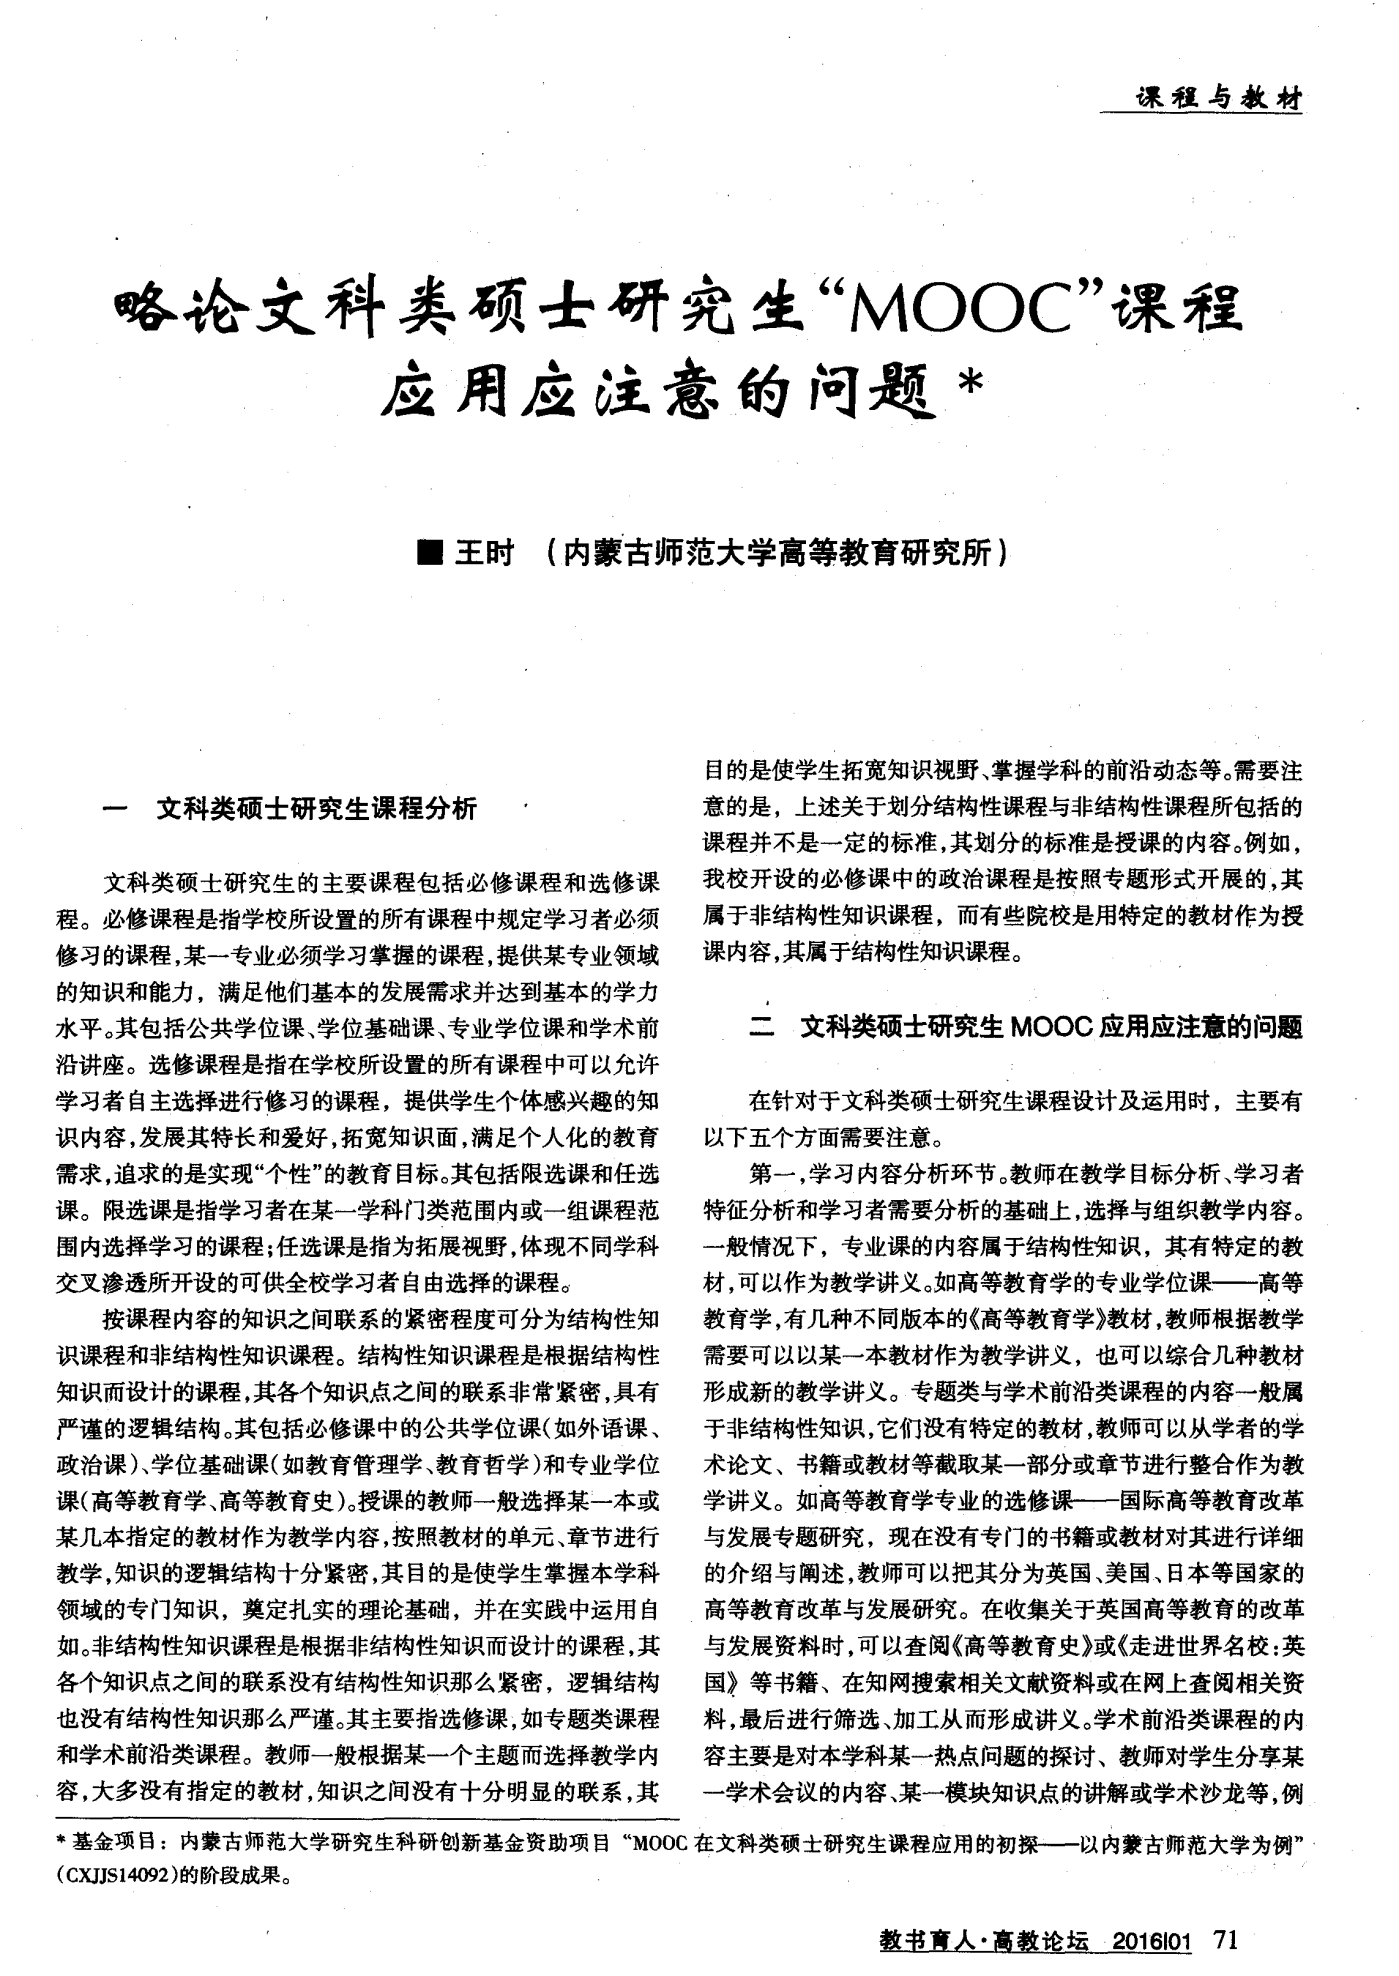 《深圳中西医结合杂志》征订、征稿